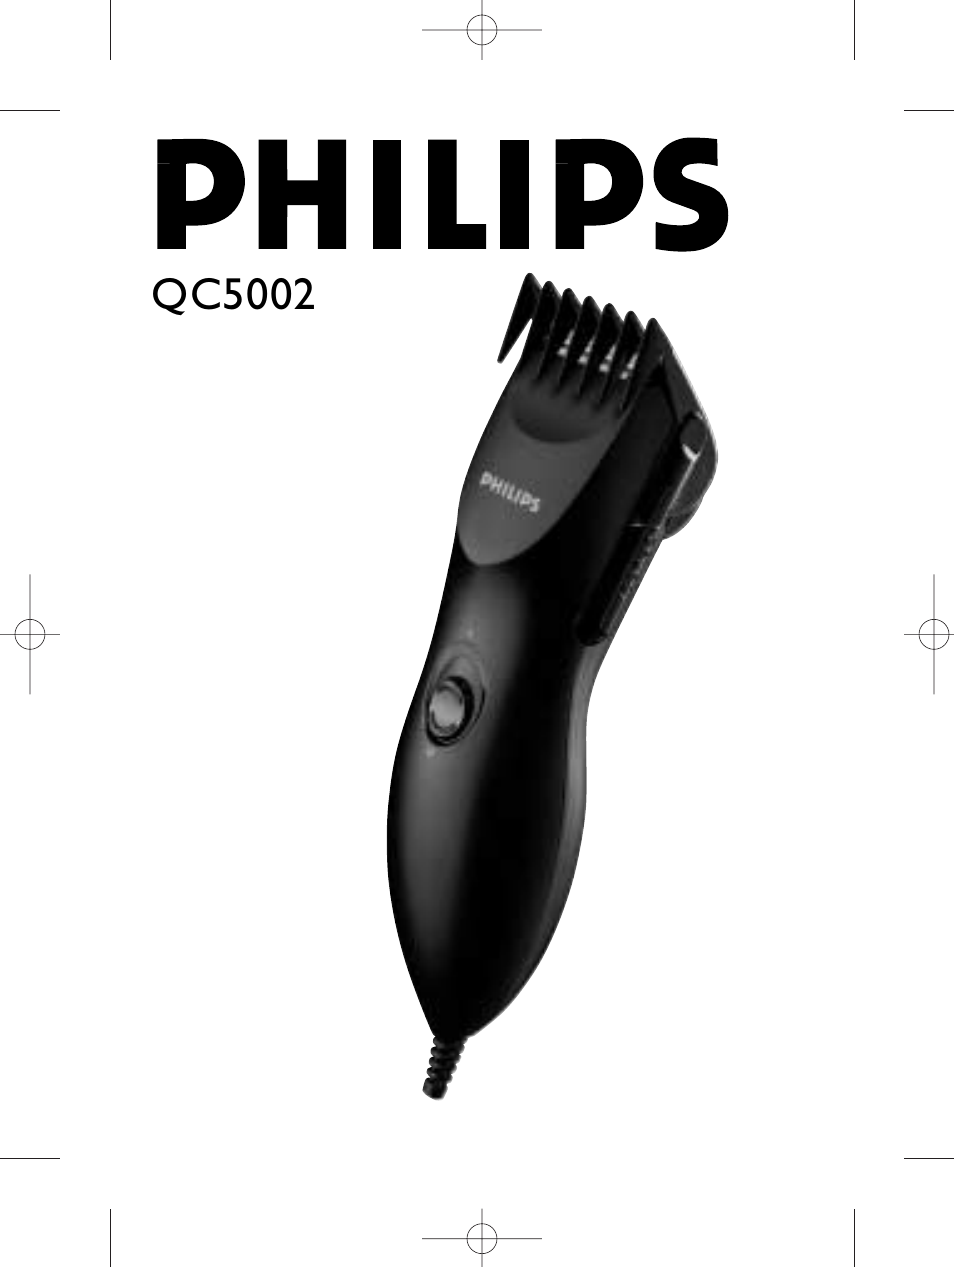 philips hair clipper series 1000